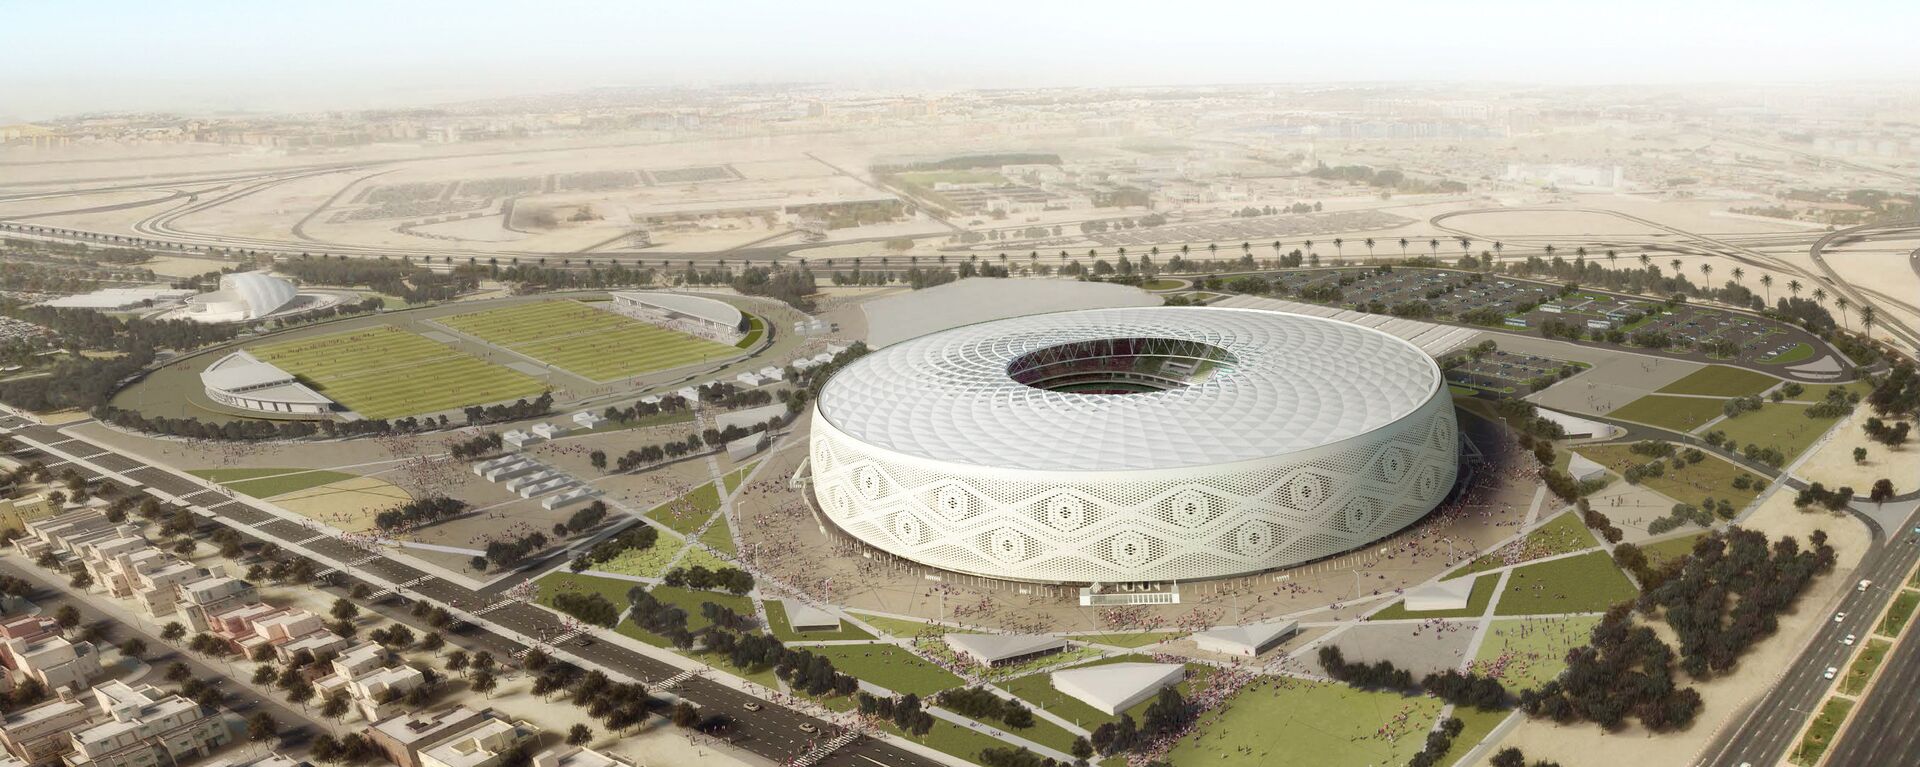 Katar 2022 Dünya Kupası- Al Thumama Stadyumu - Sputnik Türkiye, 1920, 01.02.2021